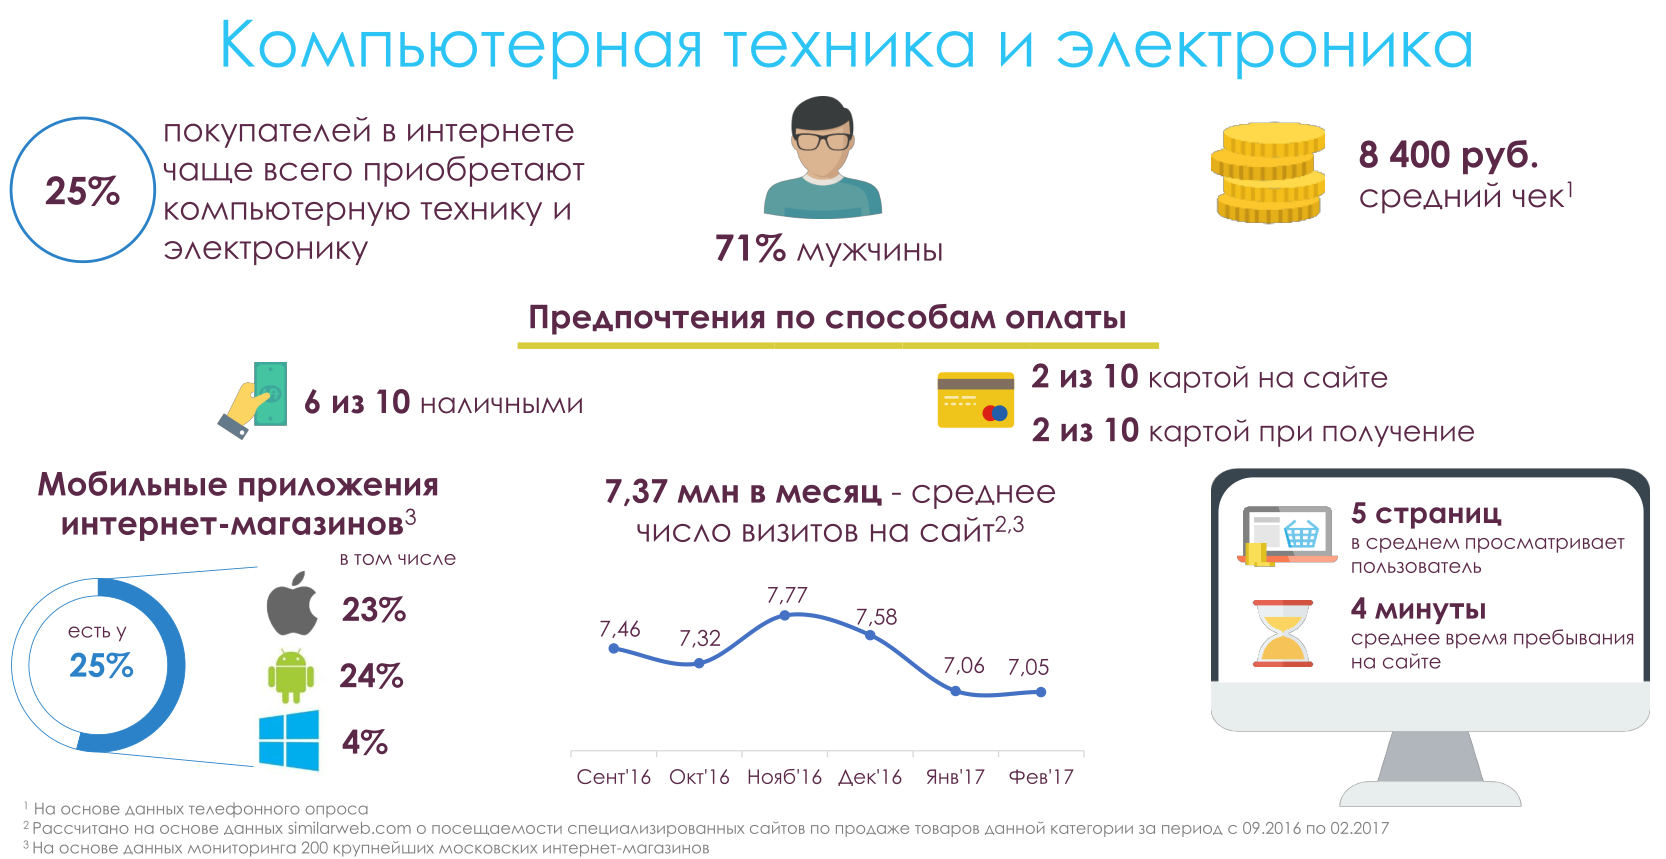 Данные по eCommerce в Москве: исследование московского правительства - 7